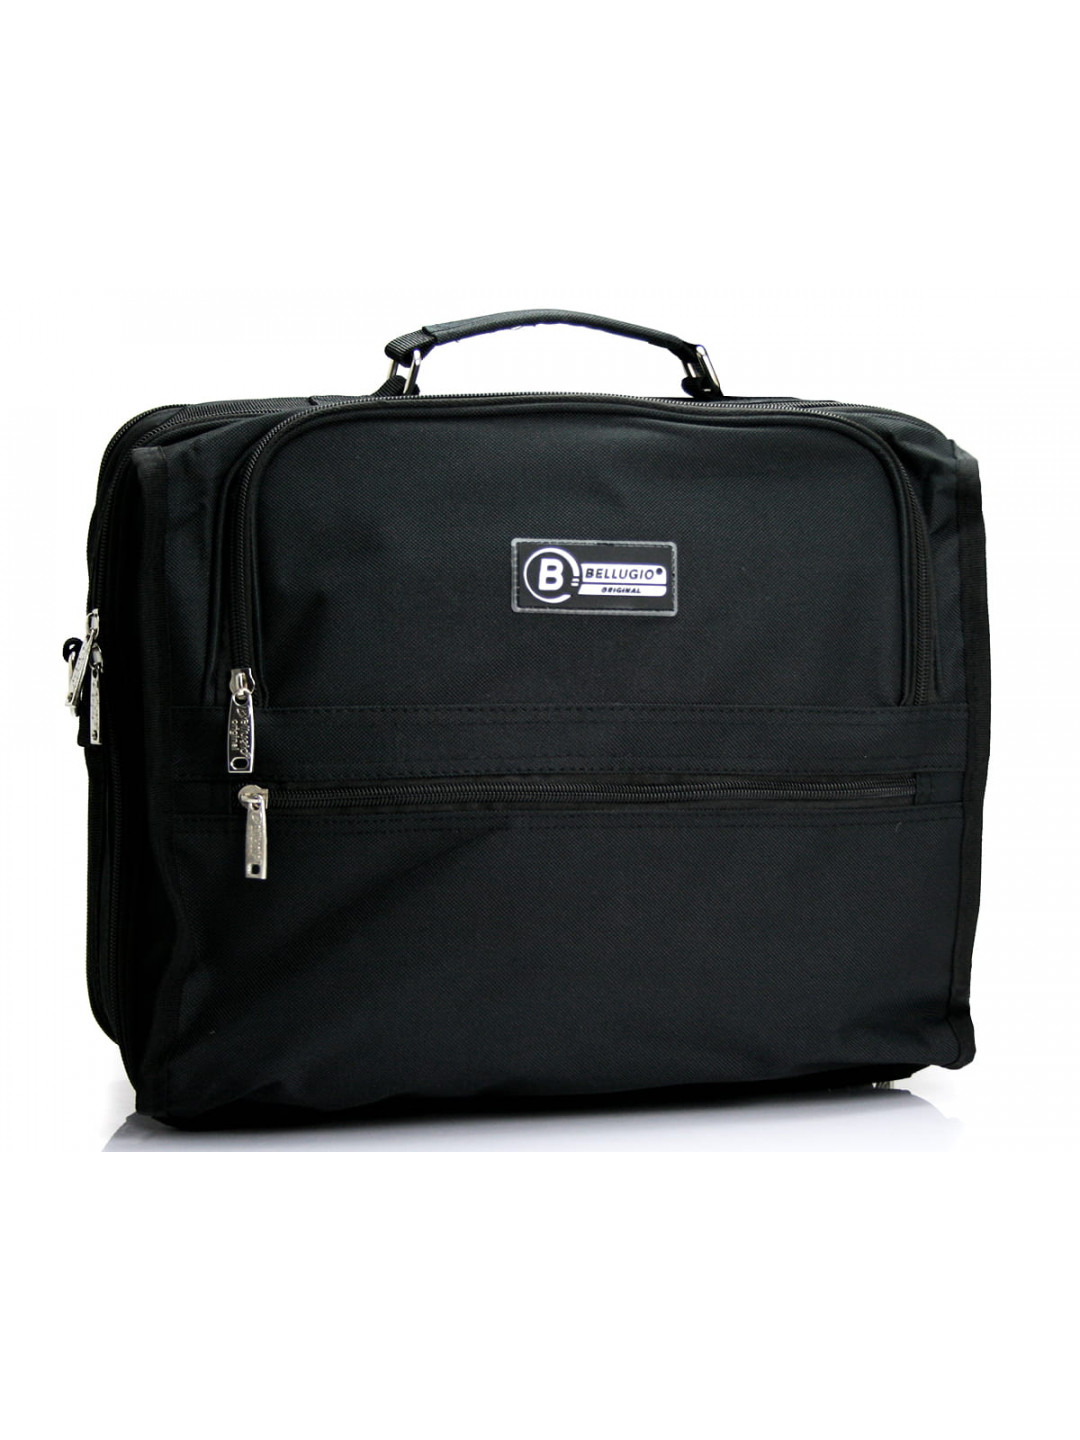 Pánská látková taška přes rameno černá – Bellugio F200